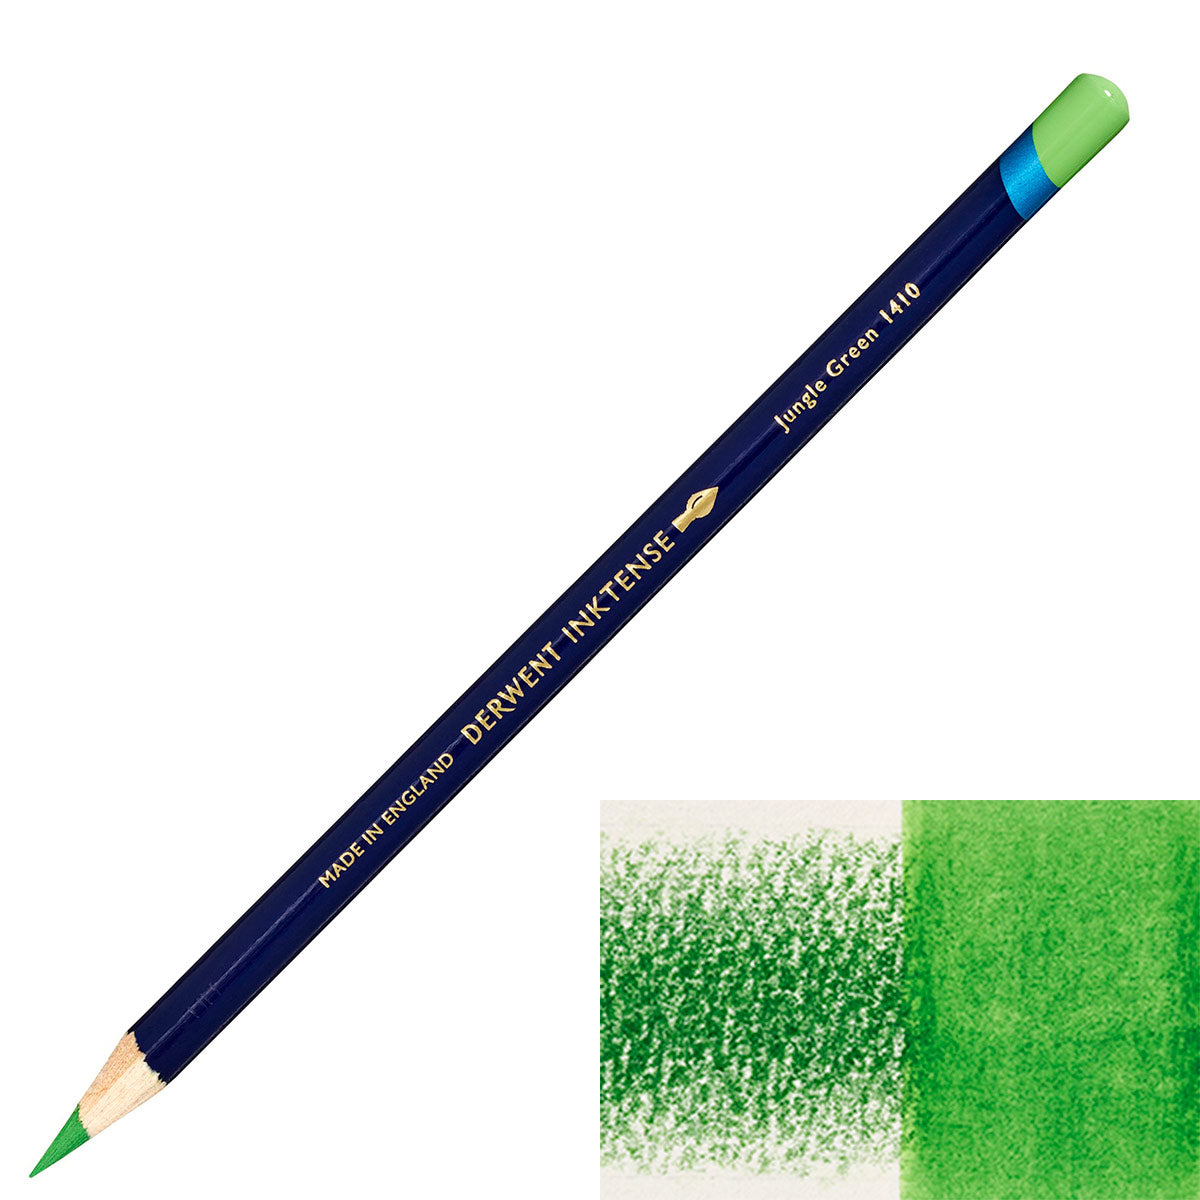 Derwent - Inktense Pencil - Jungle Green 1410